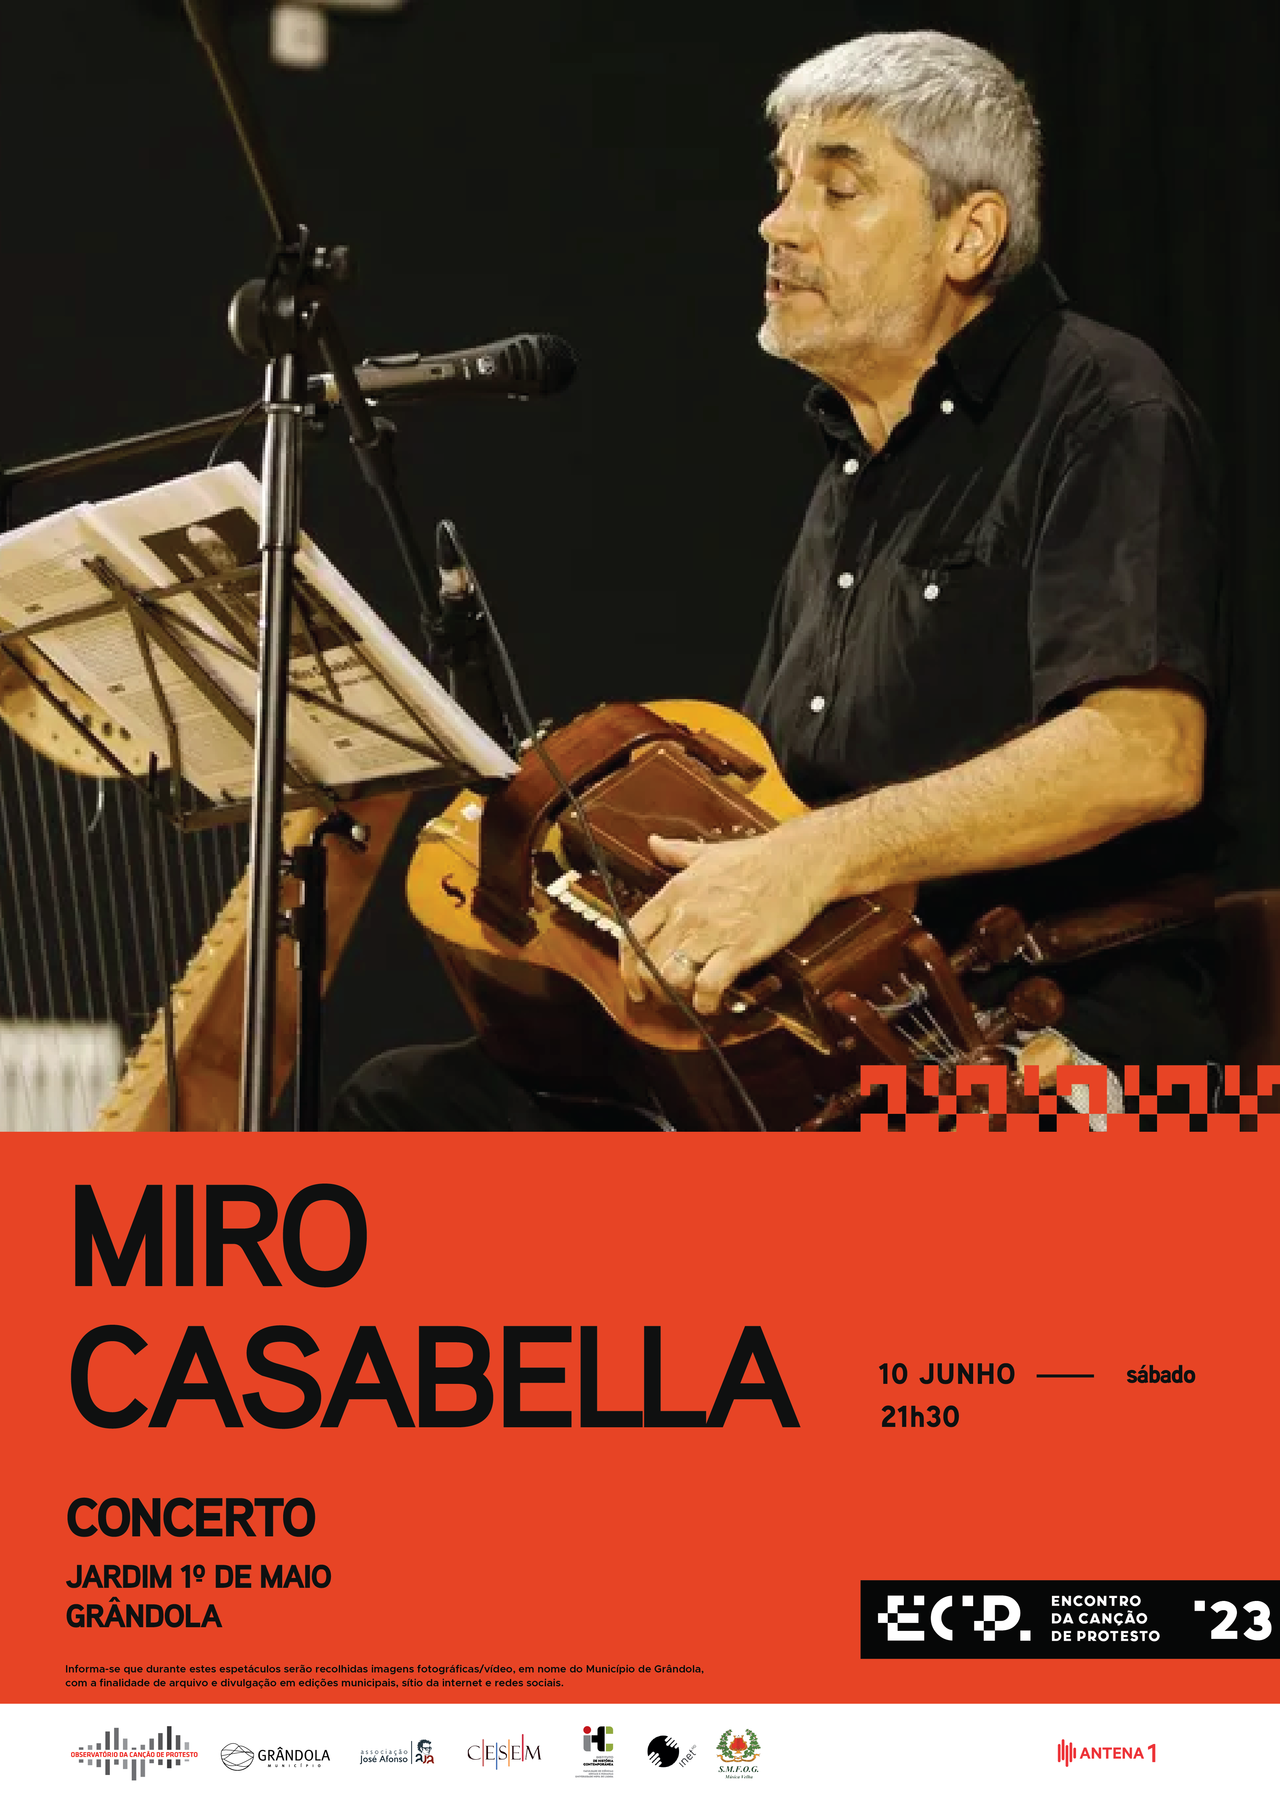 Encontro da Canção de Protesto | Concerto » Miro Casabella